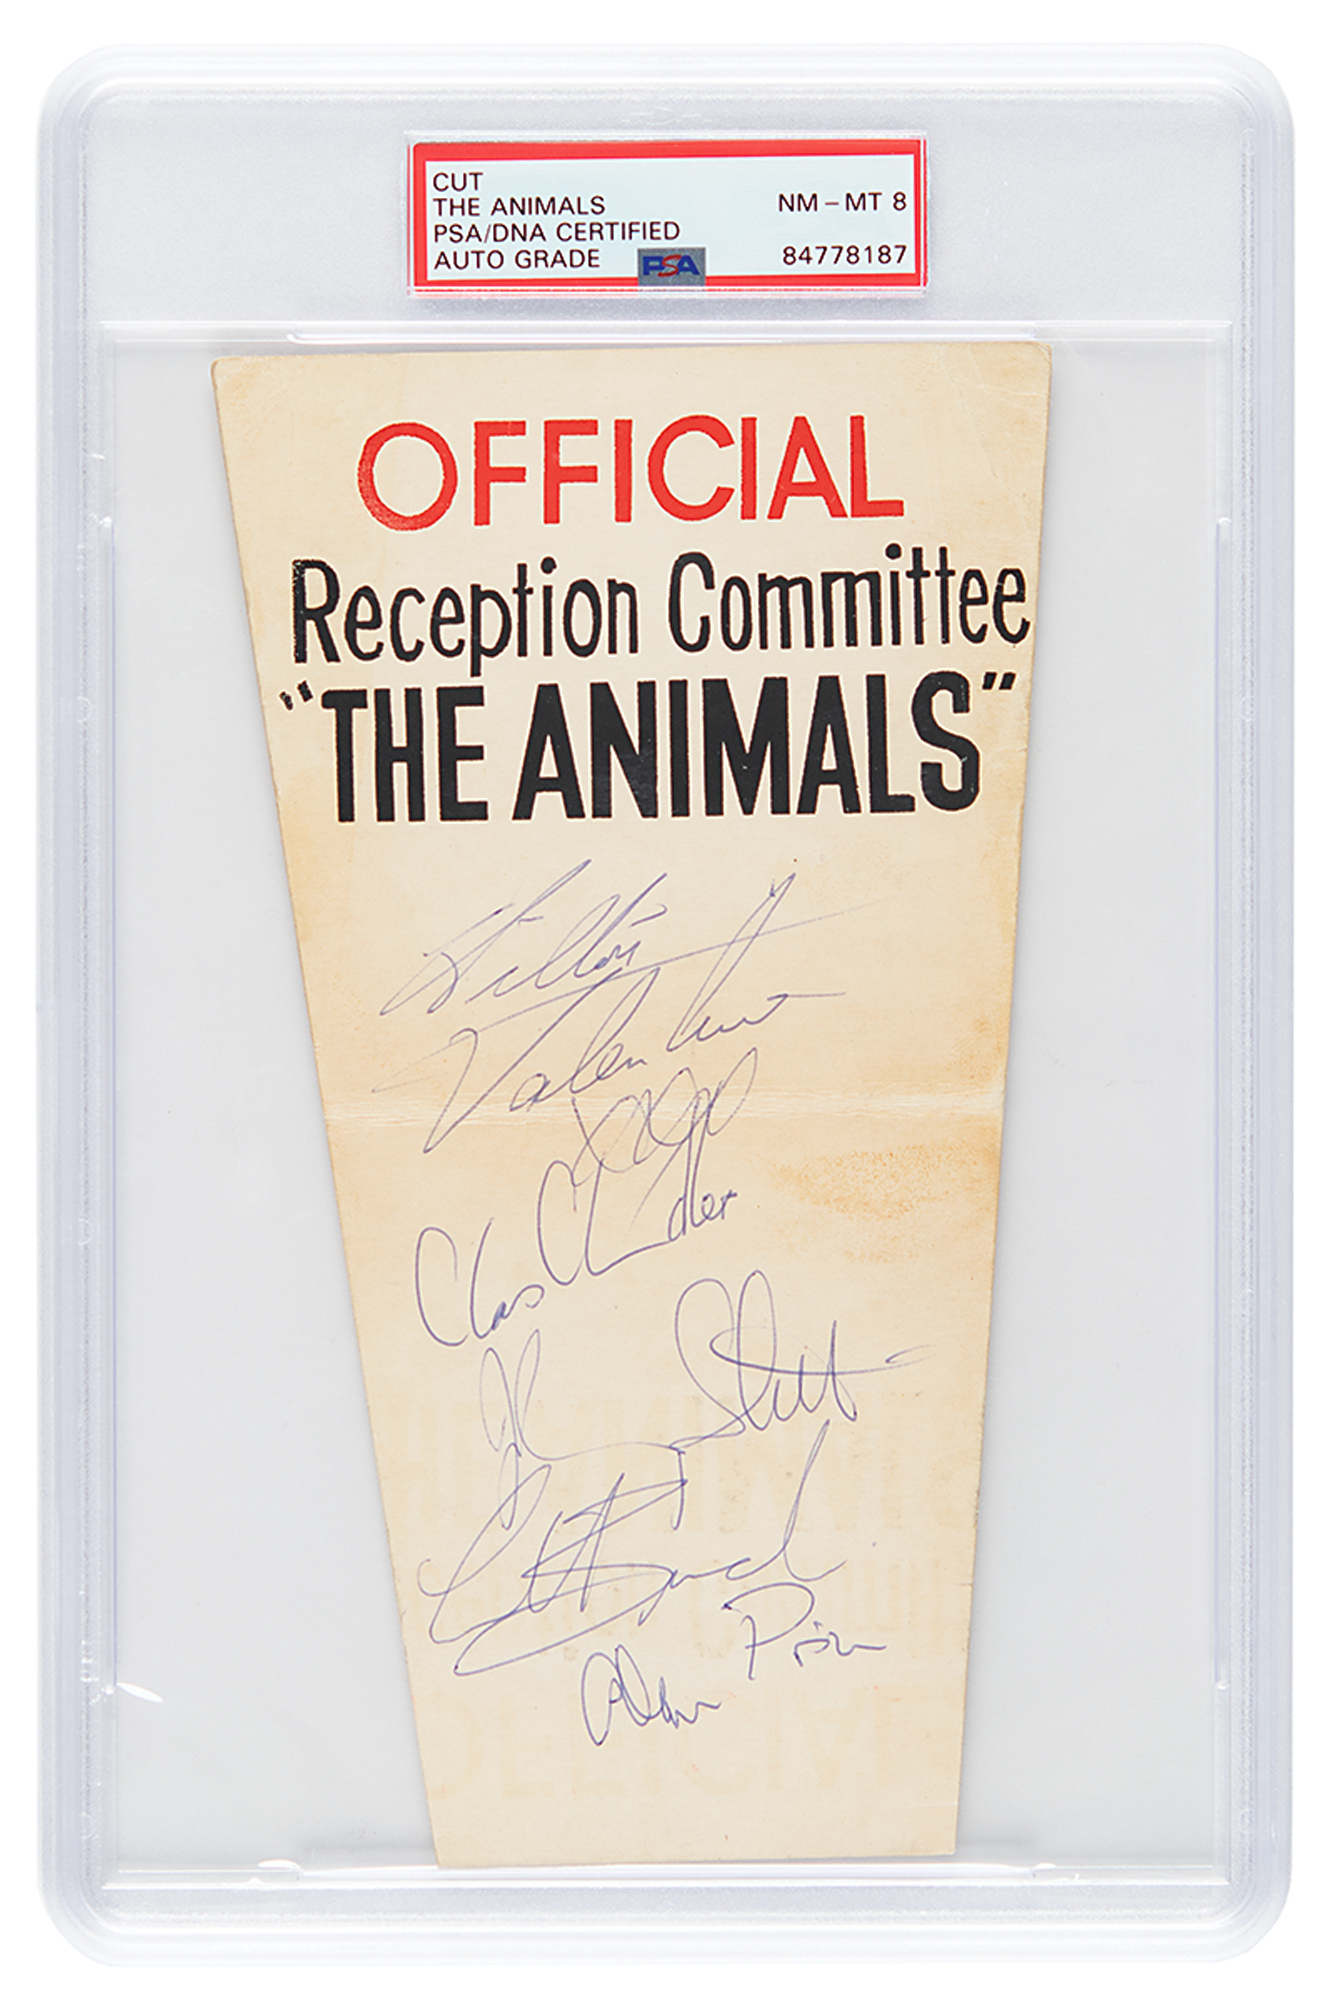 Lot #7307 The Animals Signatures - NM-MT 8